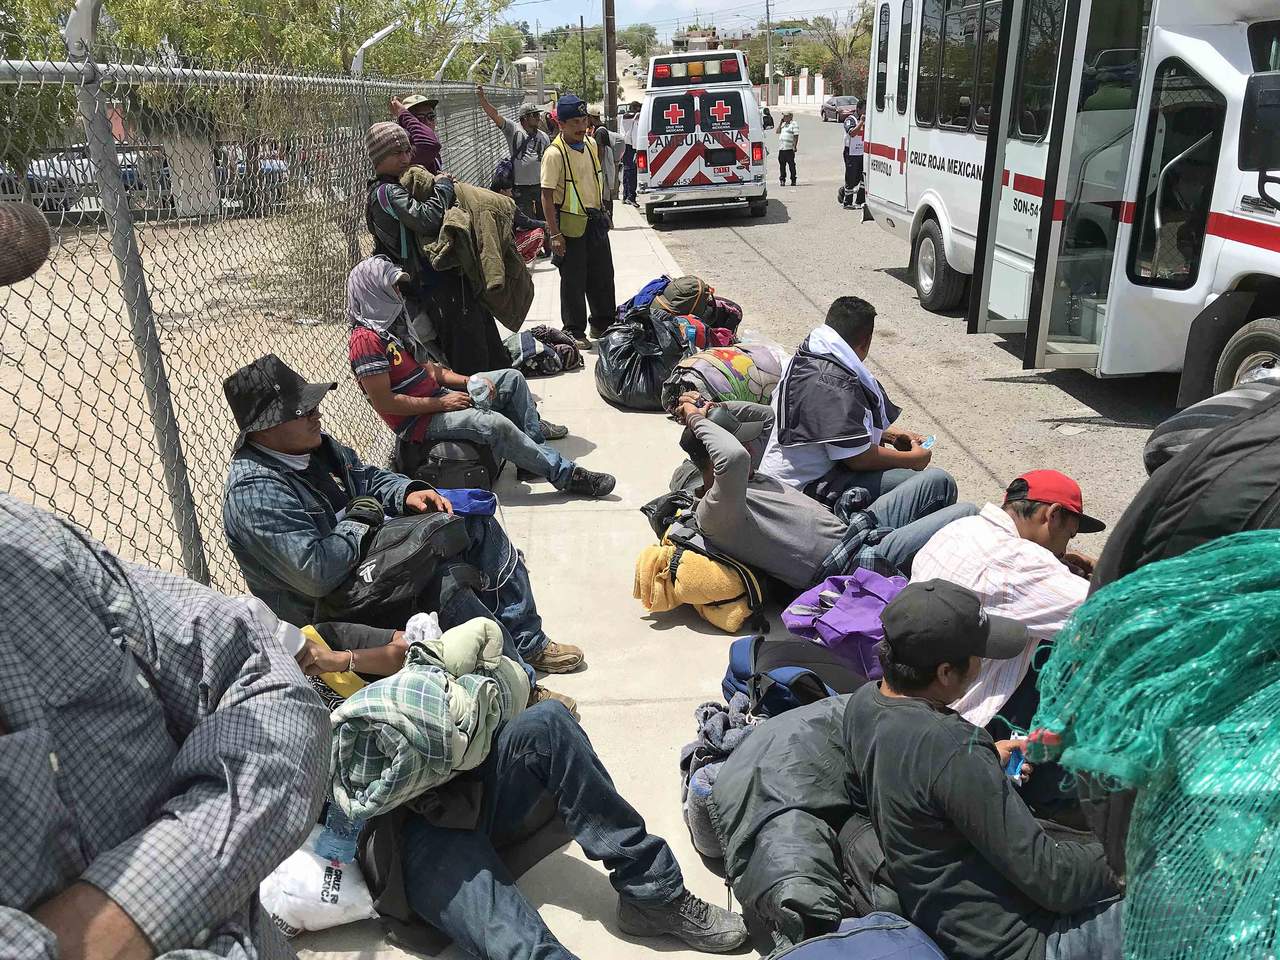 La administración Trump envió al Congreso recientemente una notificación para utilizar los 20 millones de ayuda foránea para el pago de boletos de avión y autobús para la repatriación de hasta 17 mil inmigrantes indocumentados en territorio mexicano. (ARCHIVO)